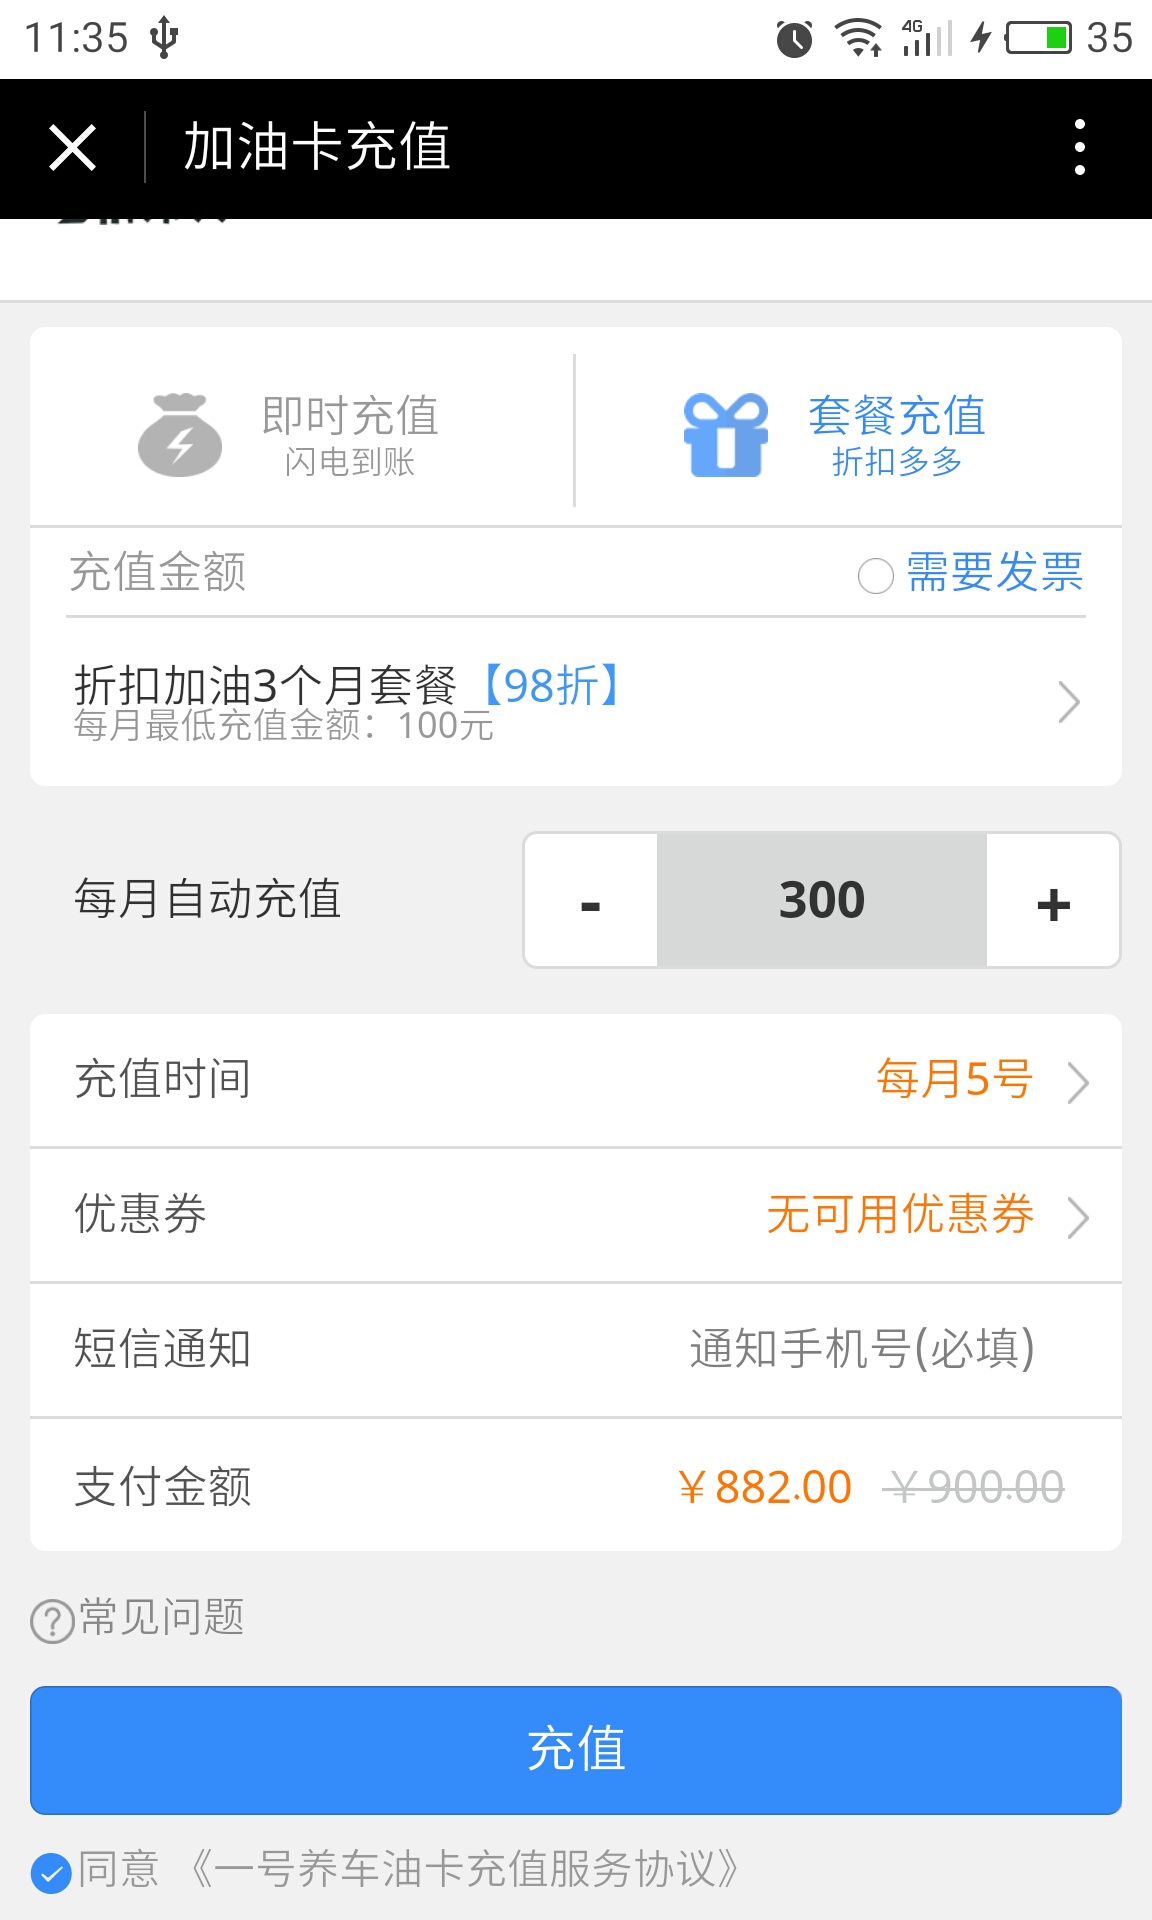 上海天游软件对《街头篮球》游戏充值卡的延长半年